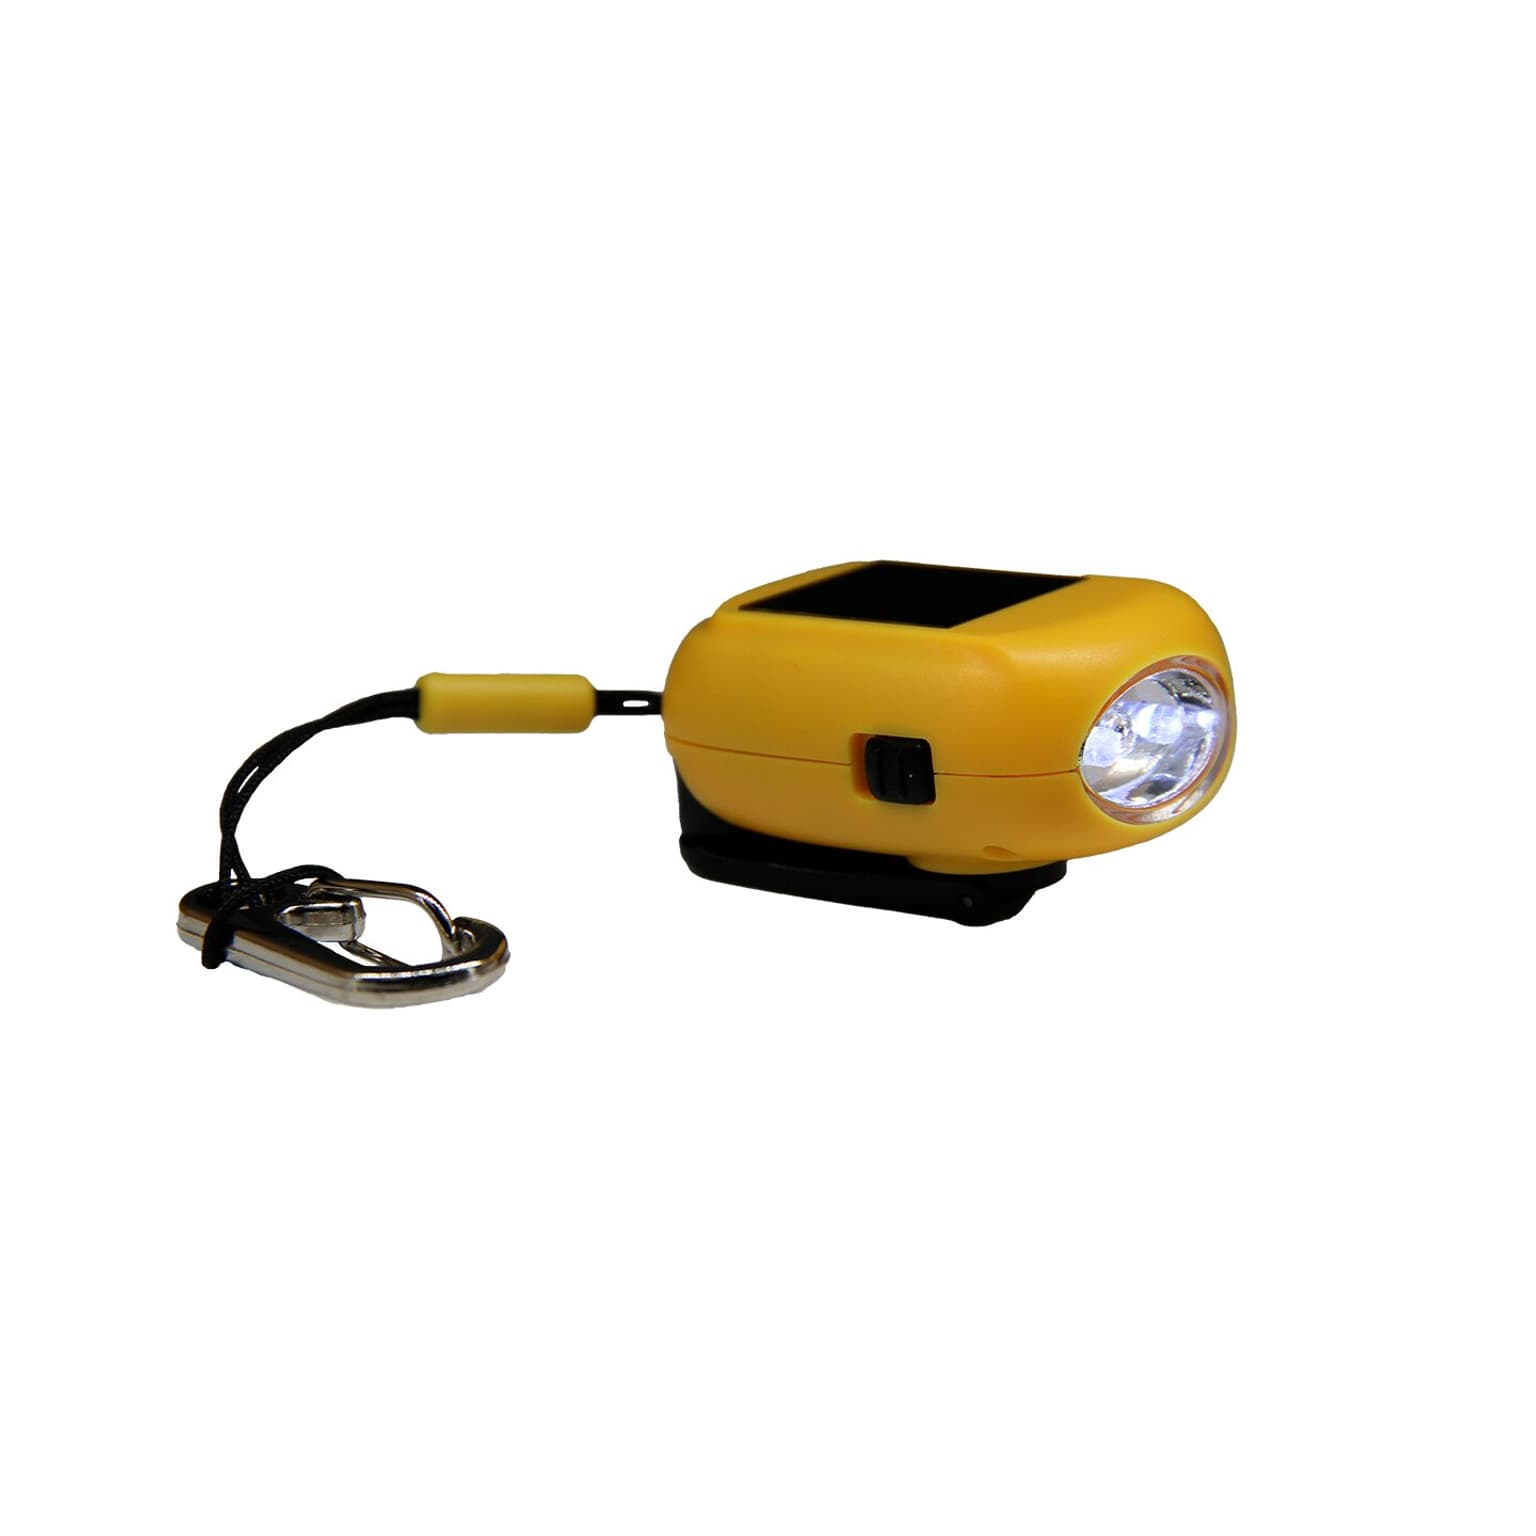 Essential Elements Essential Elements Mini Taschenlampe Recycled inkl. Karabiner Taschenlampe giallo 3